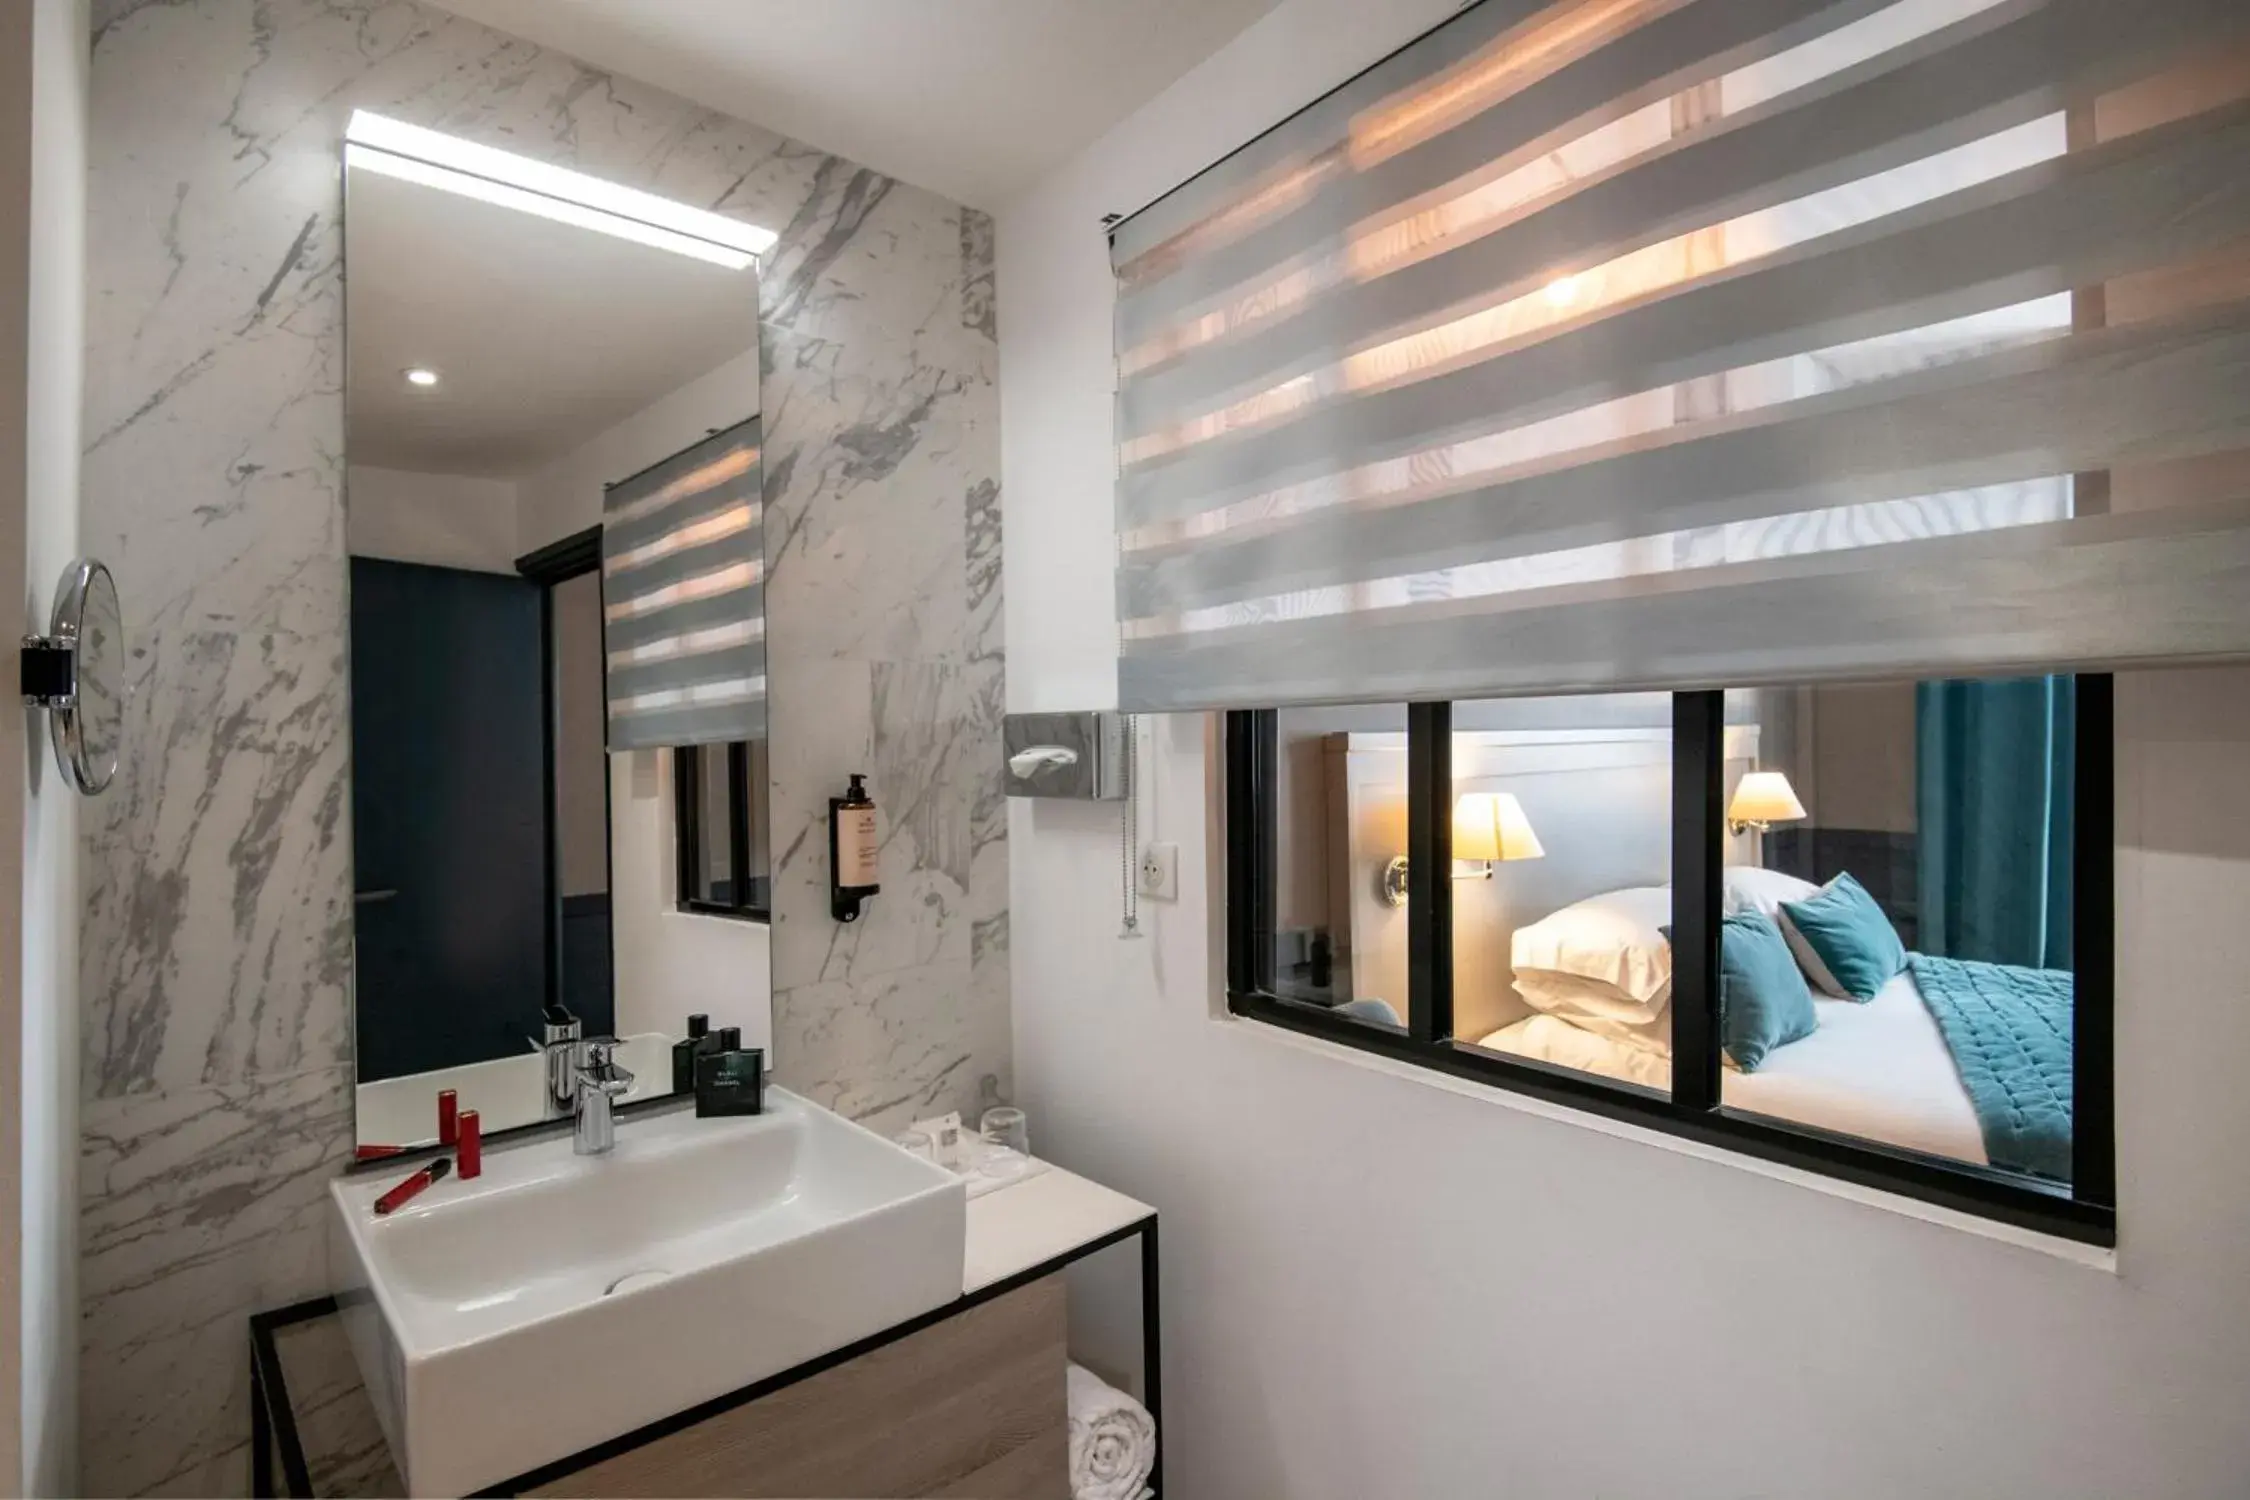 Shower, Bathroom in Best Western Plus Nice Cosy Hotel